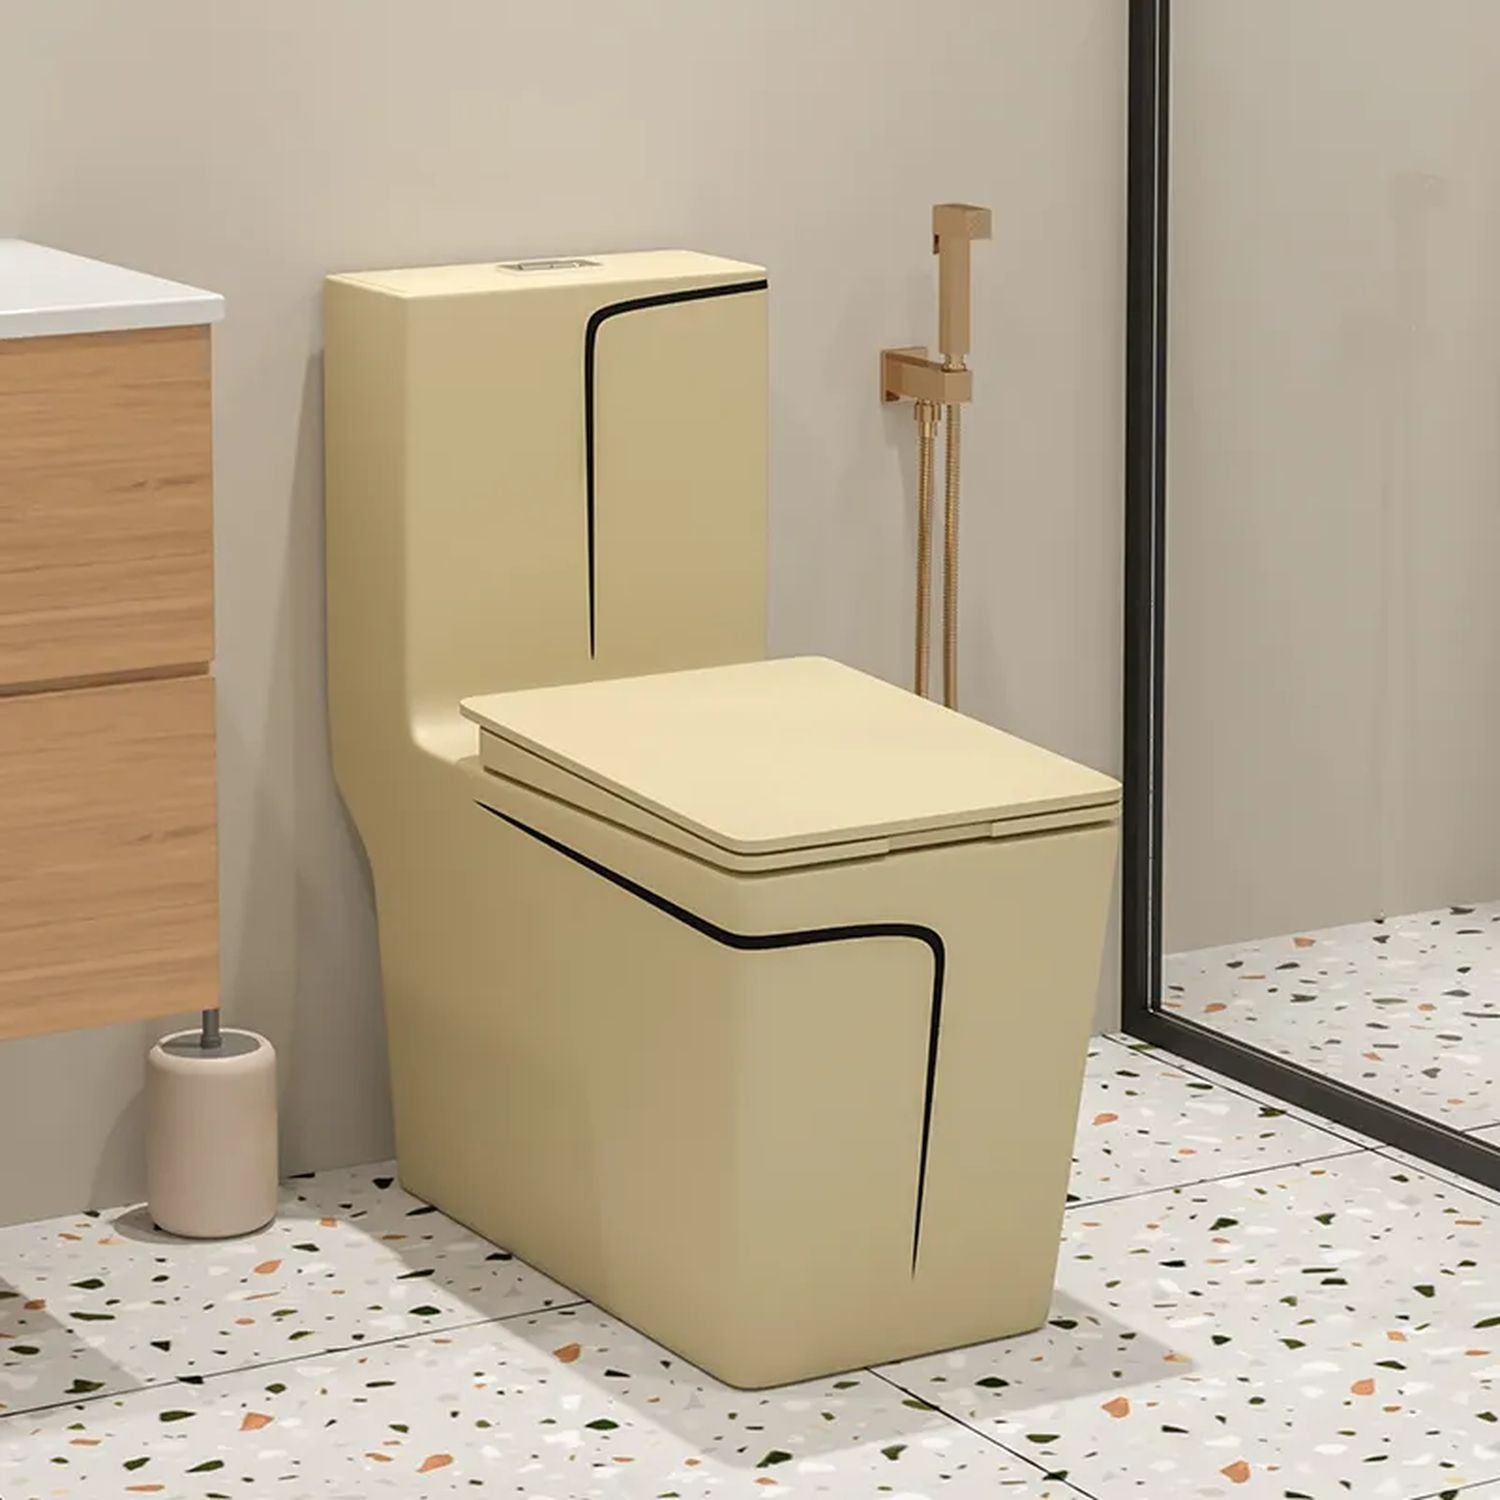 Igien WC – Euro Hygiene